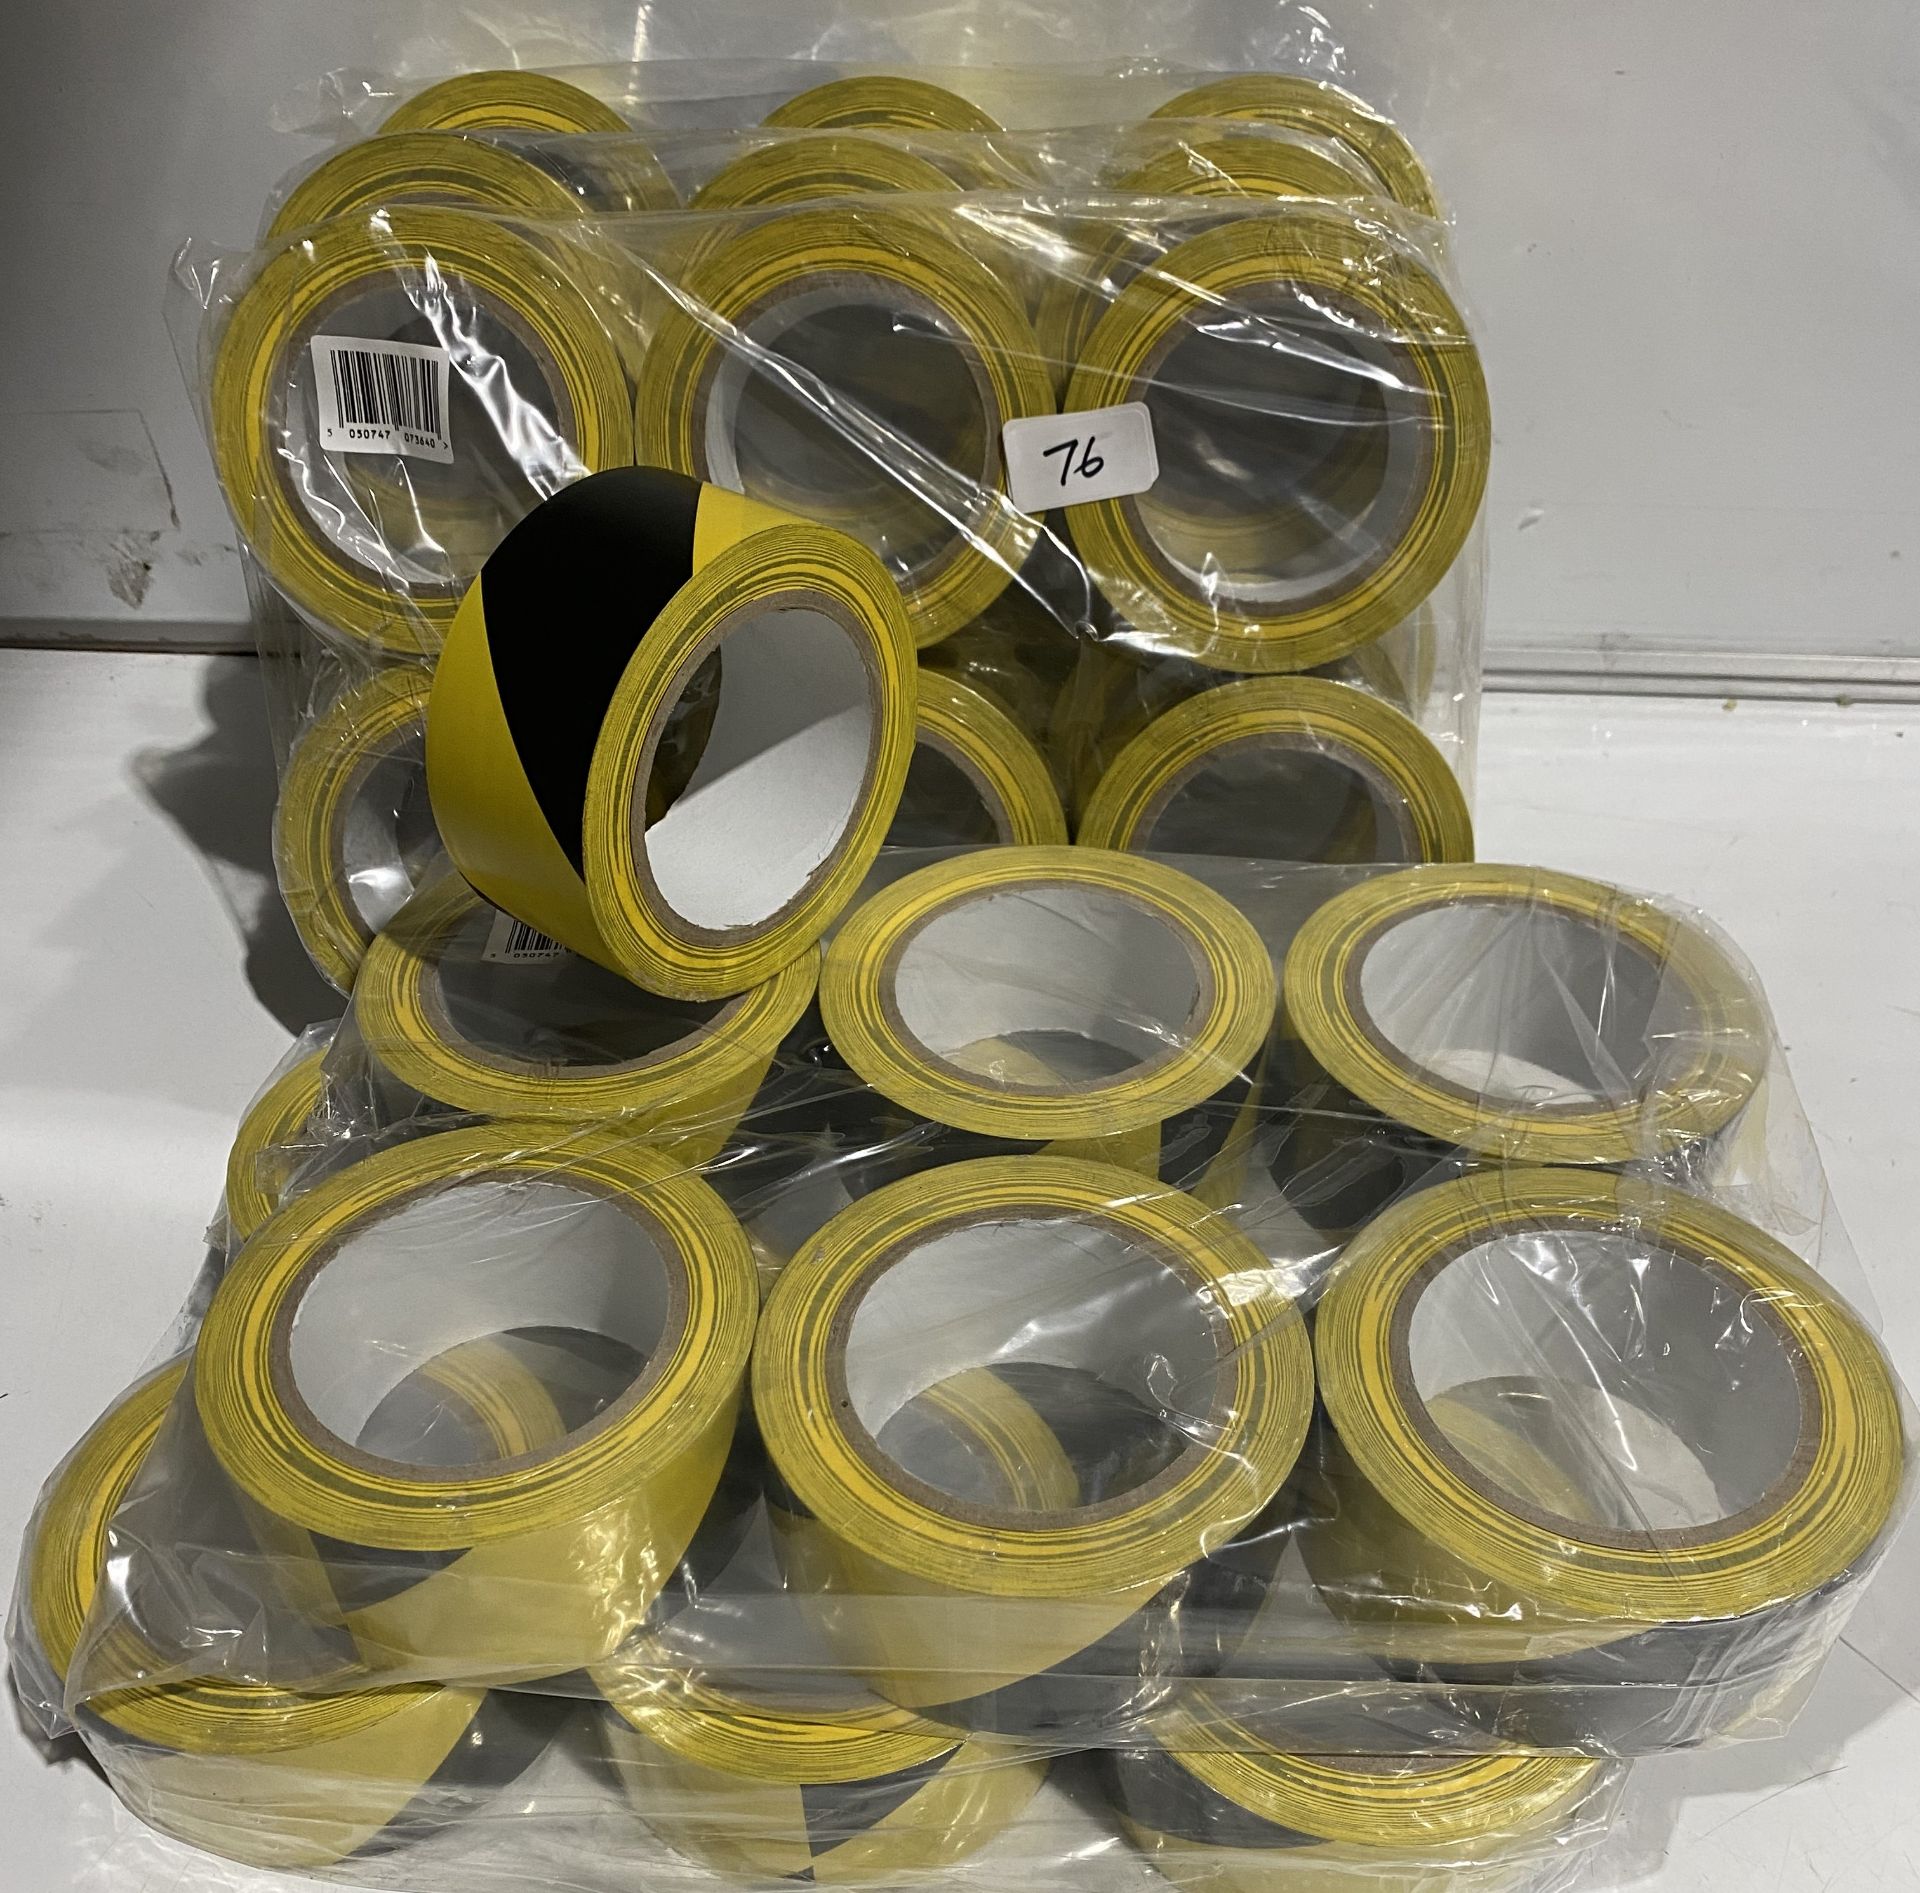 5 x packs of 6 black and yellow hazard tape,